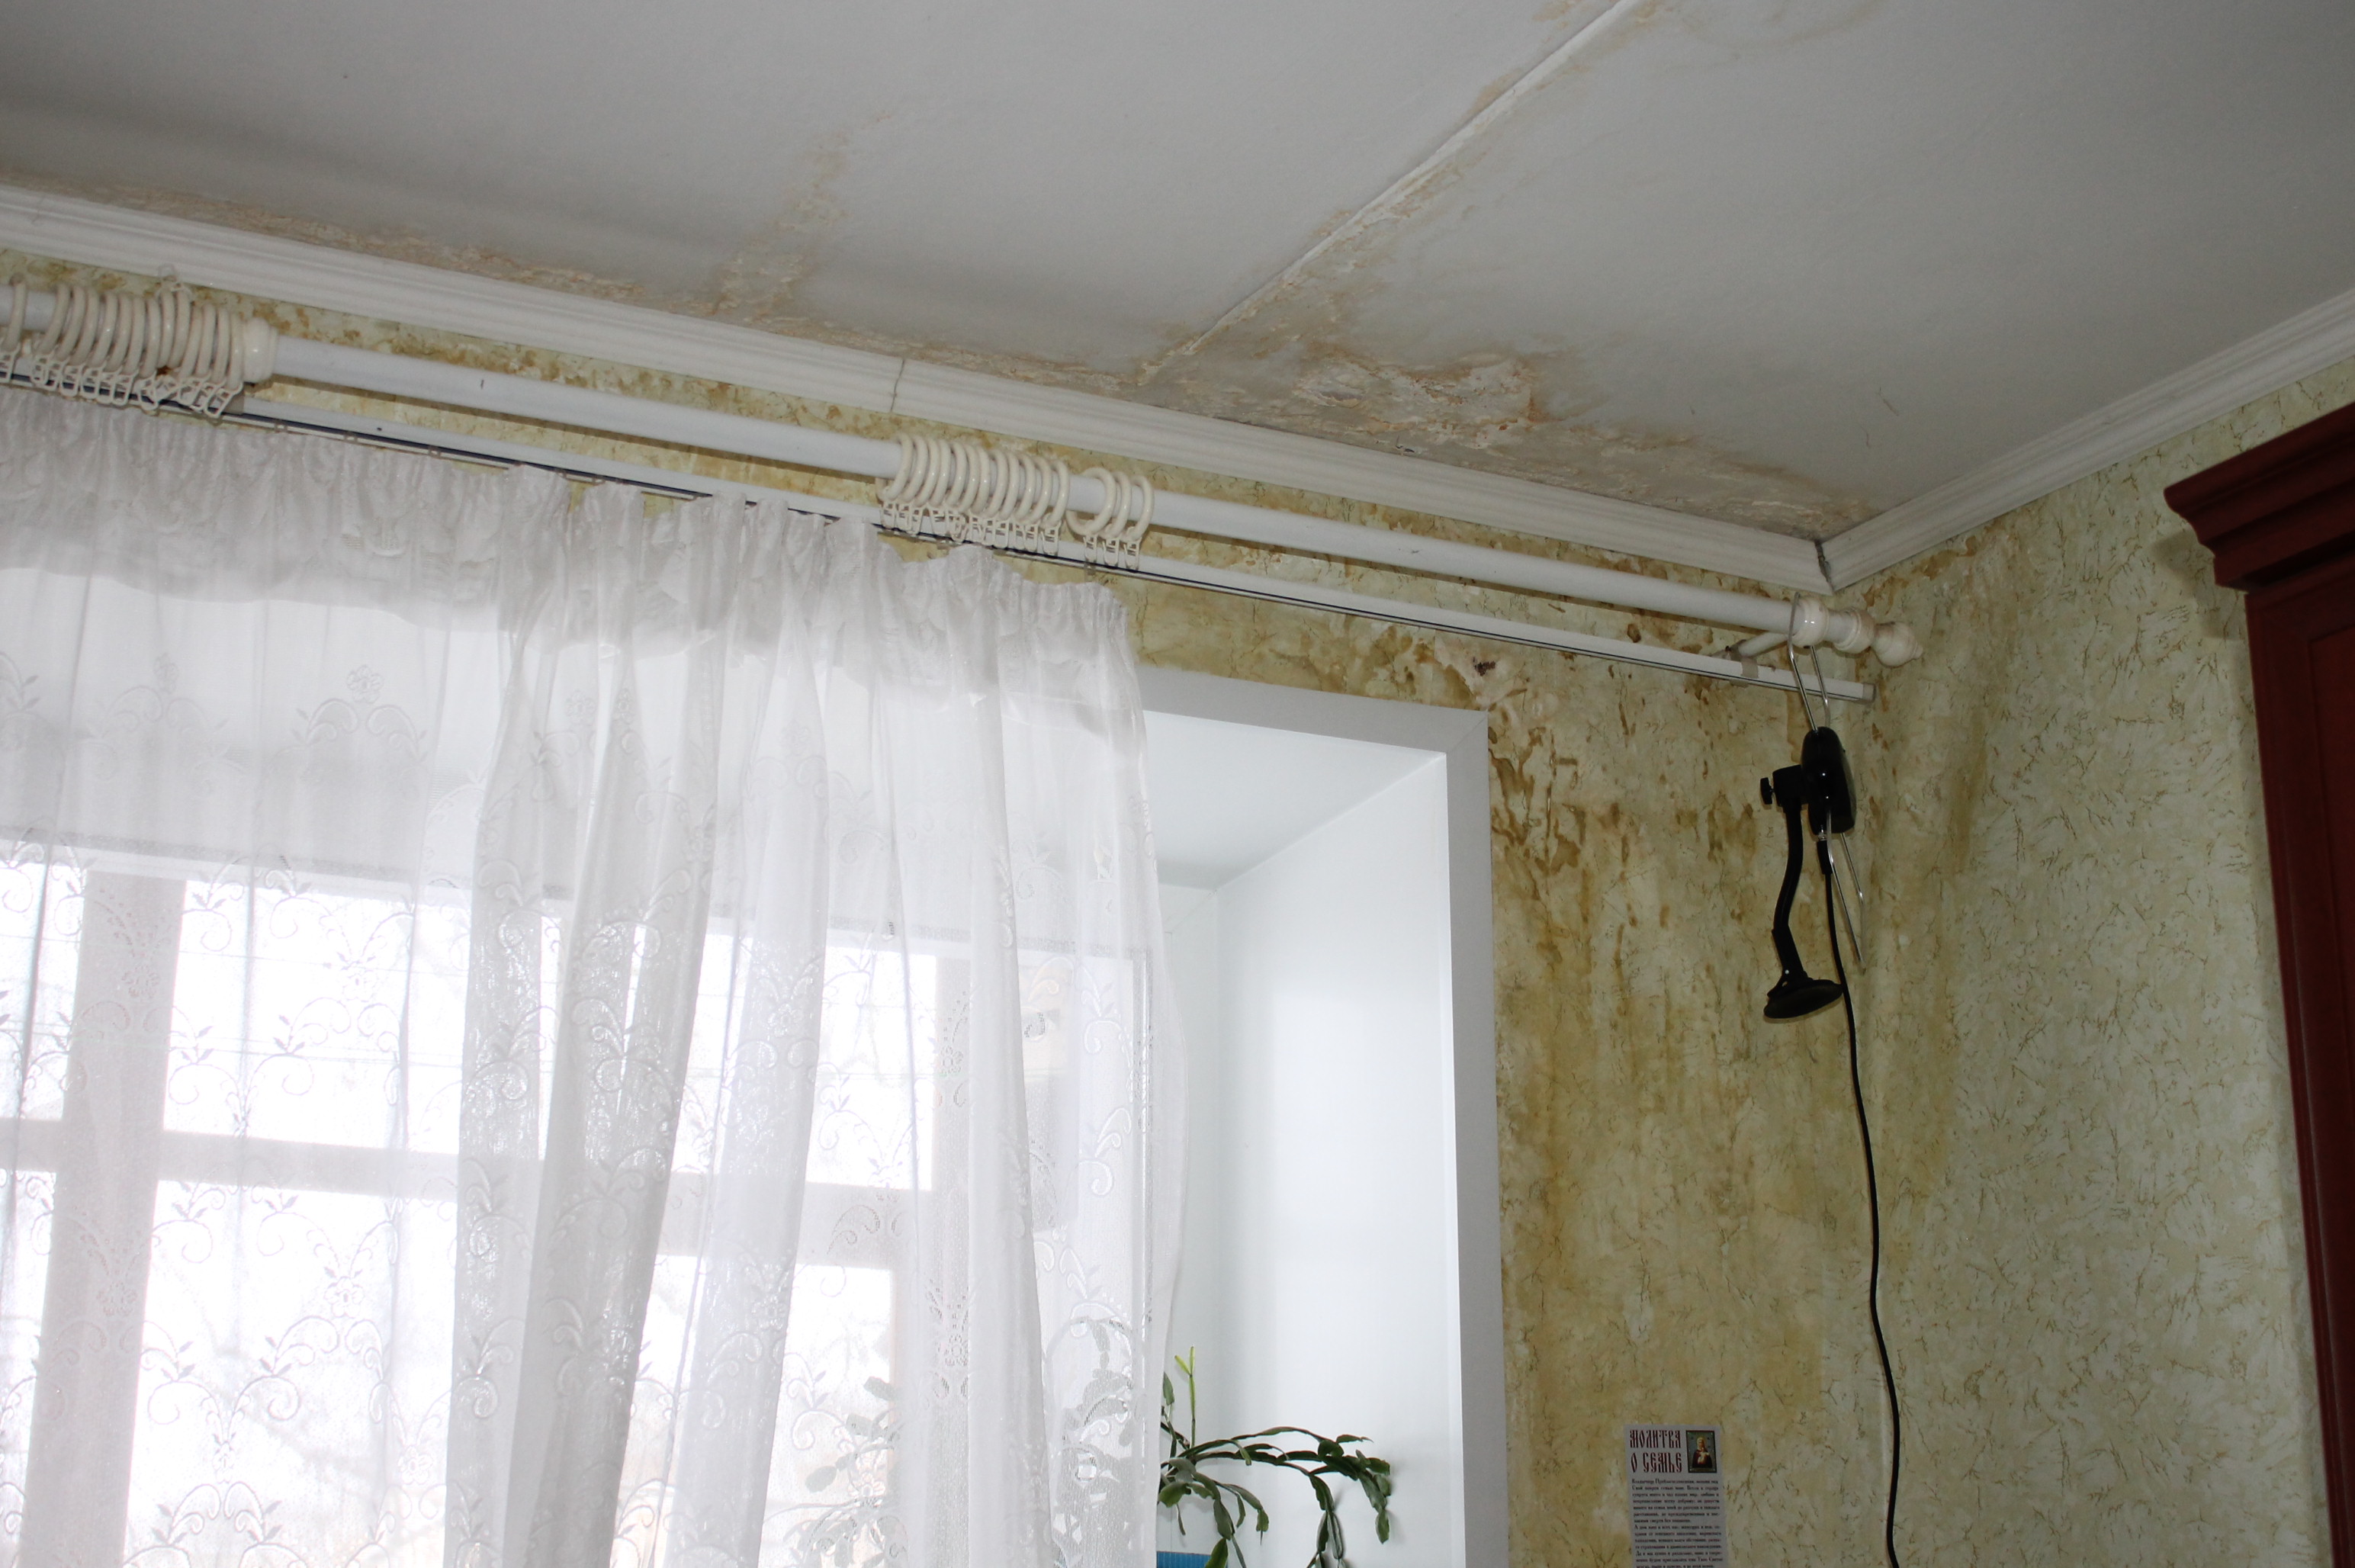 Общественники помогли пенсионерке из Иванова получить от управляющей компании компенсацию за испорченный потолок и имущество